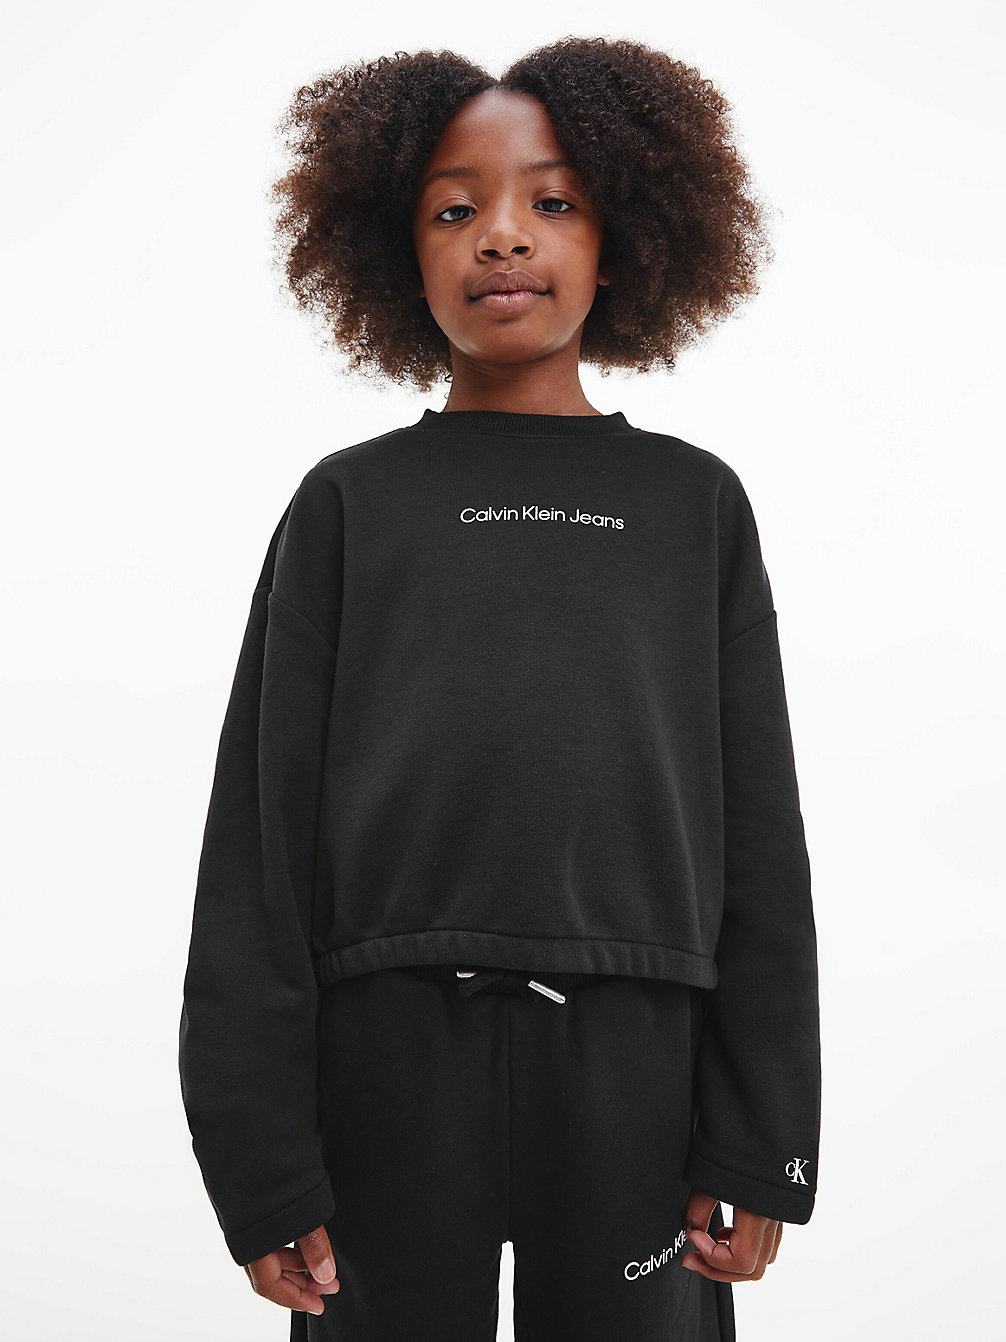 CK BLACK Trainingsanzug-Set undefined girls Calvin Klein